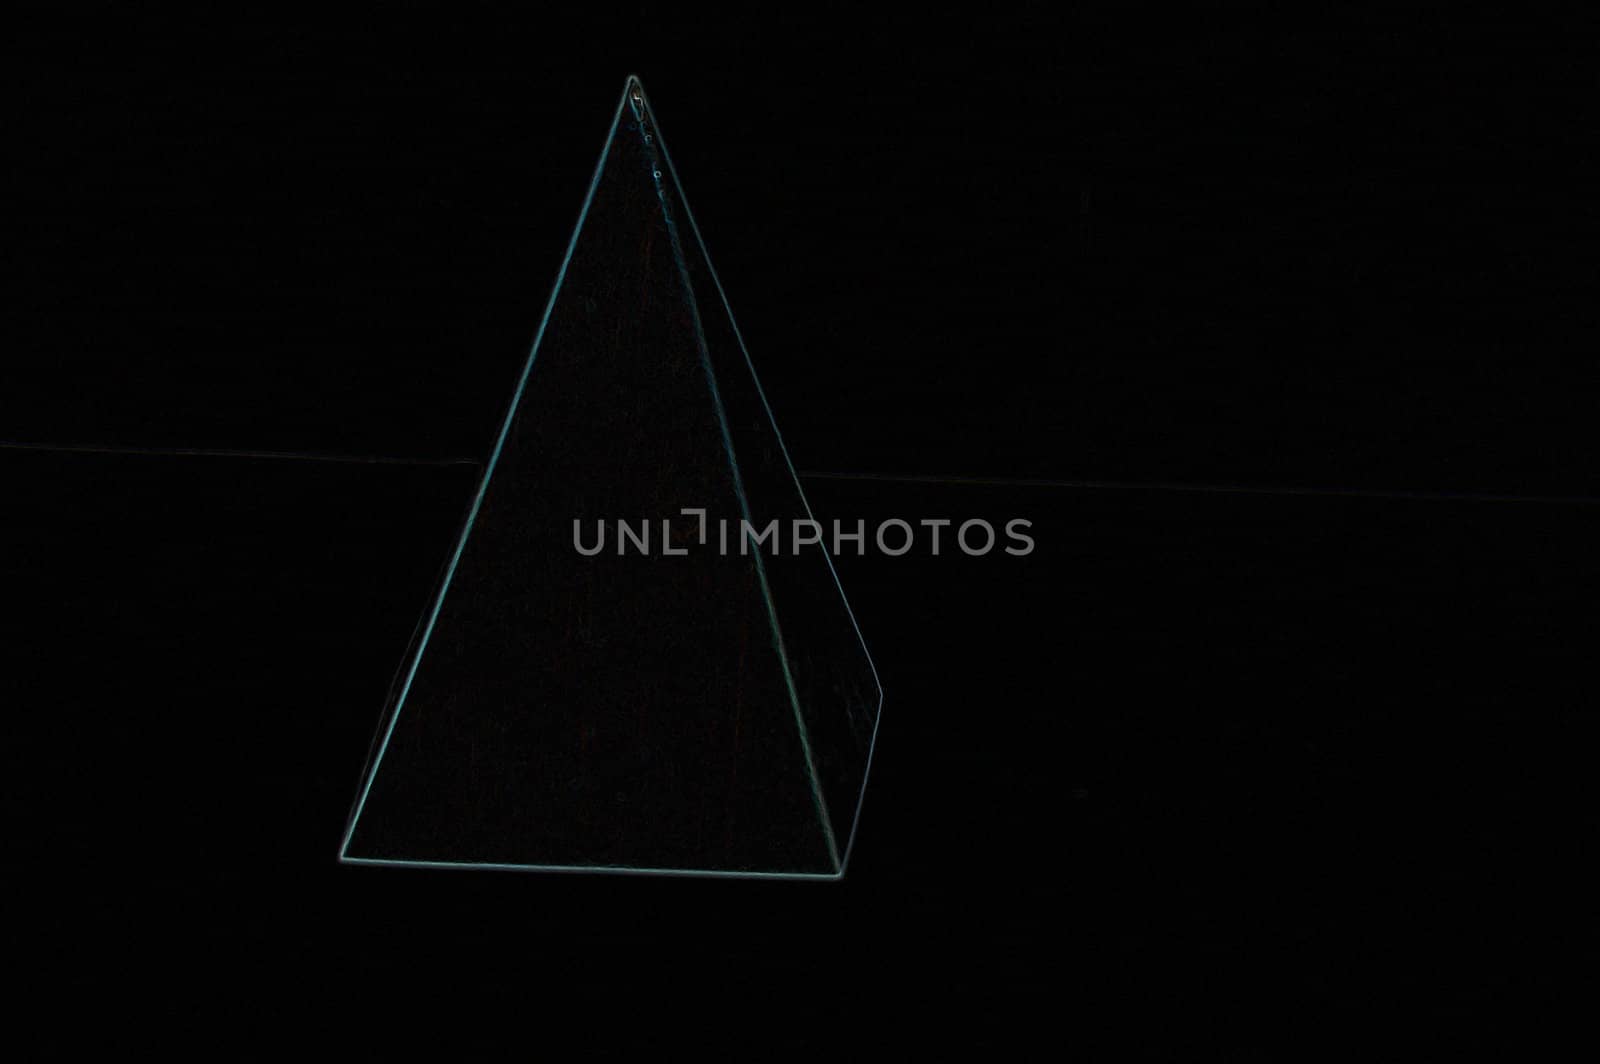 piramide en la oscuridad by higiniochaves